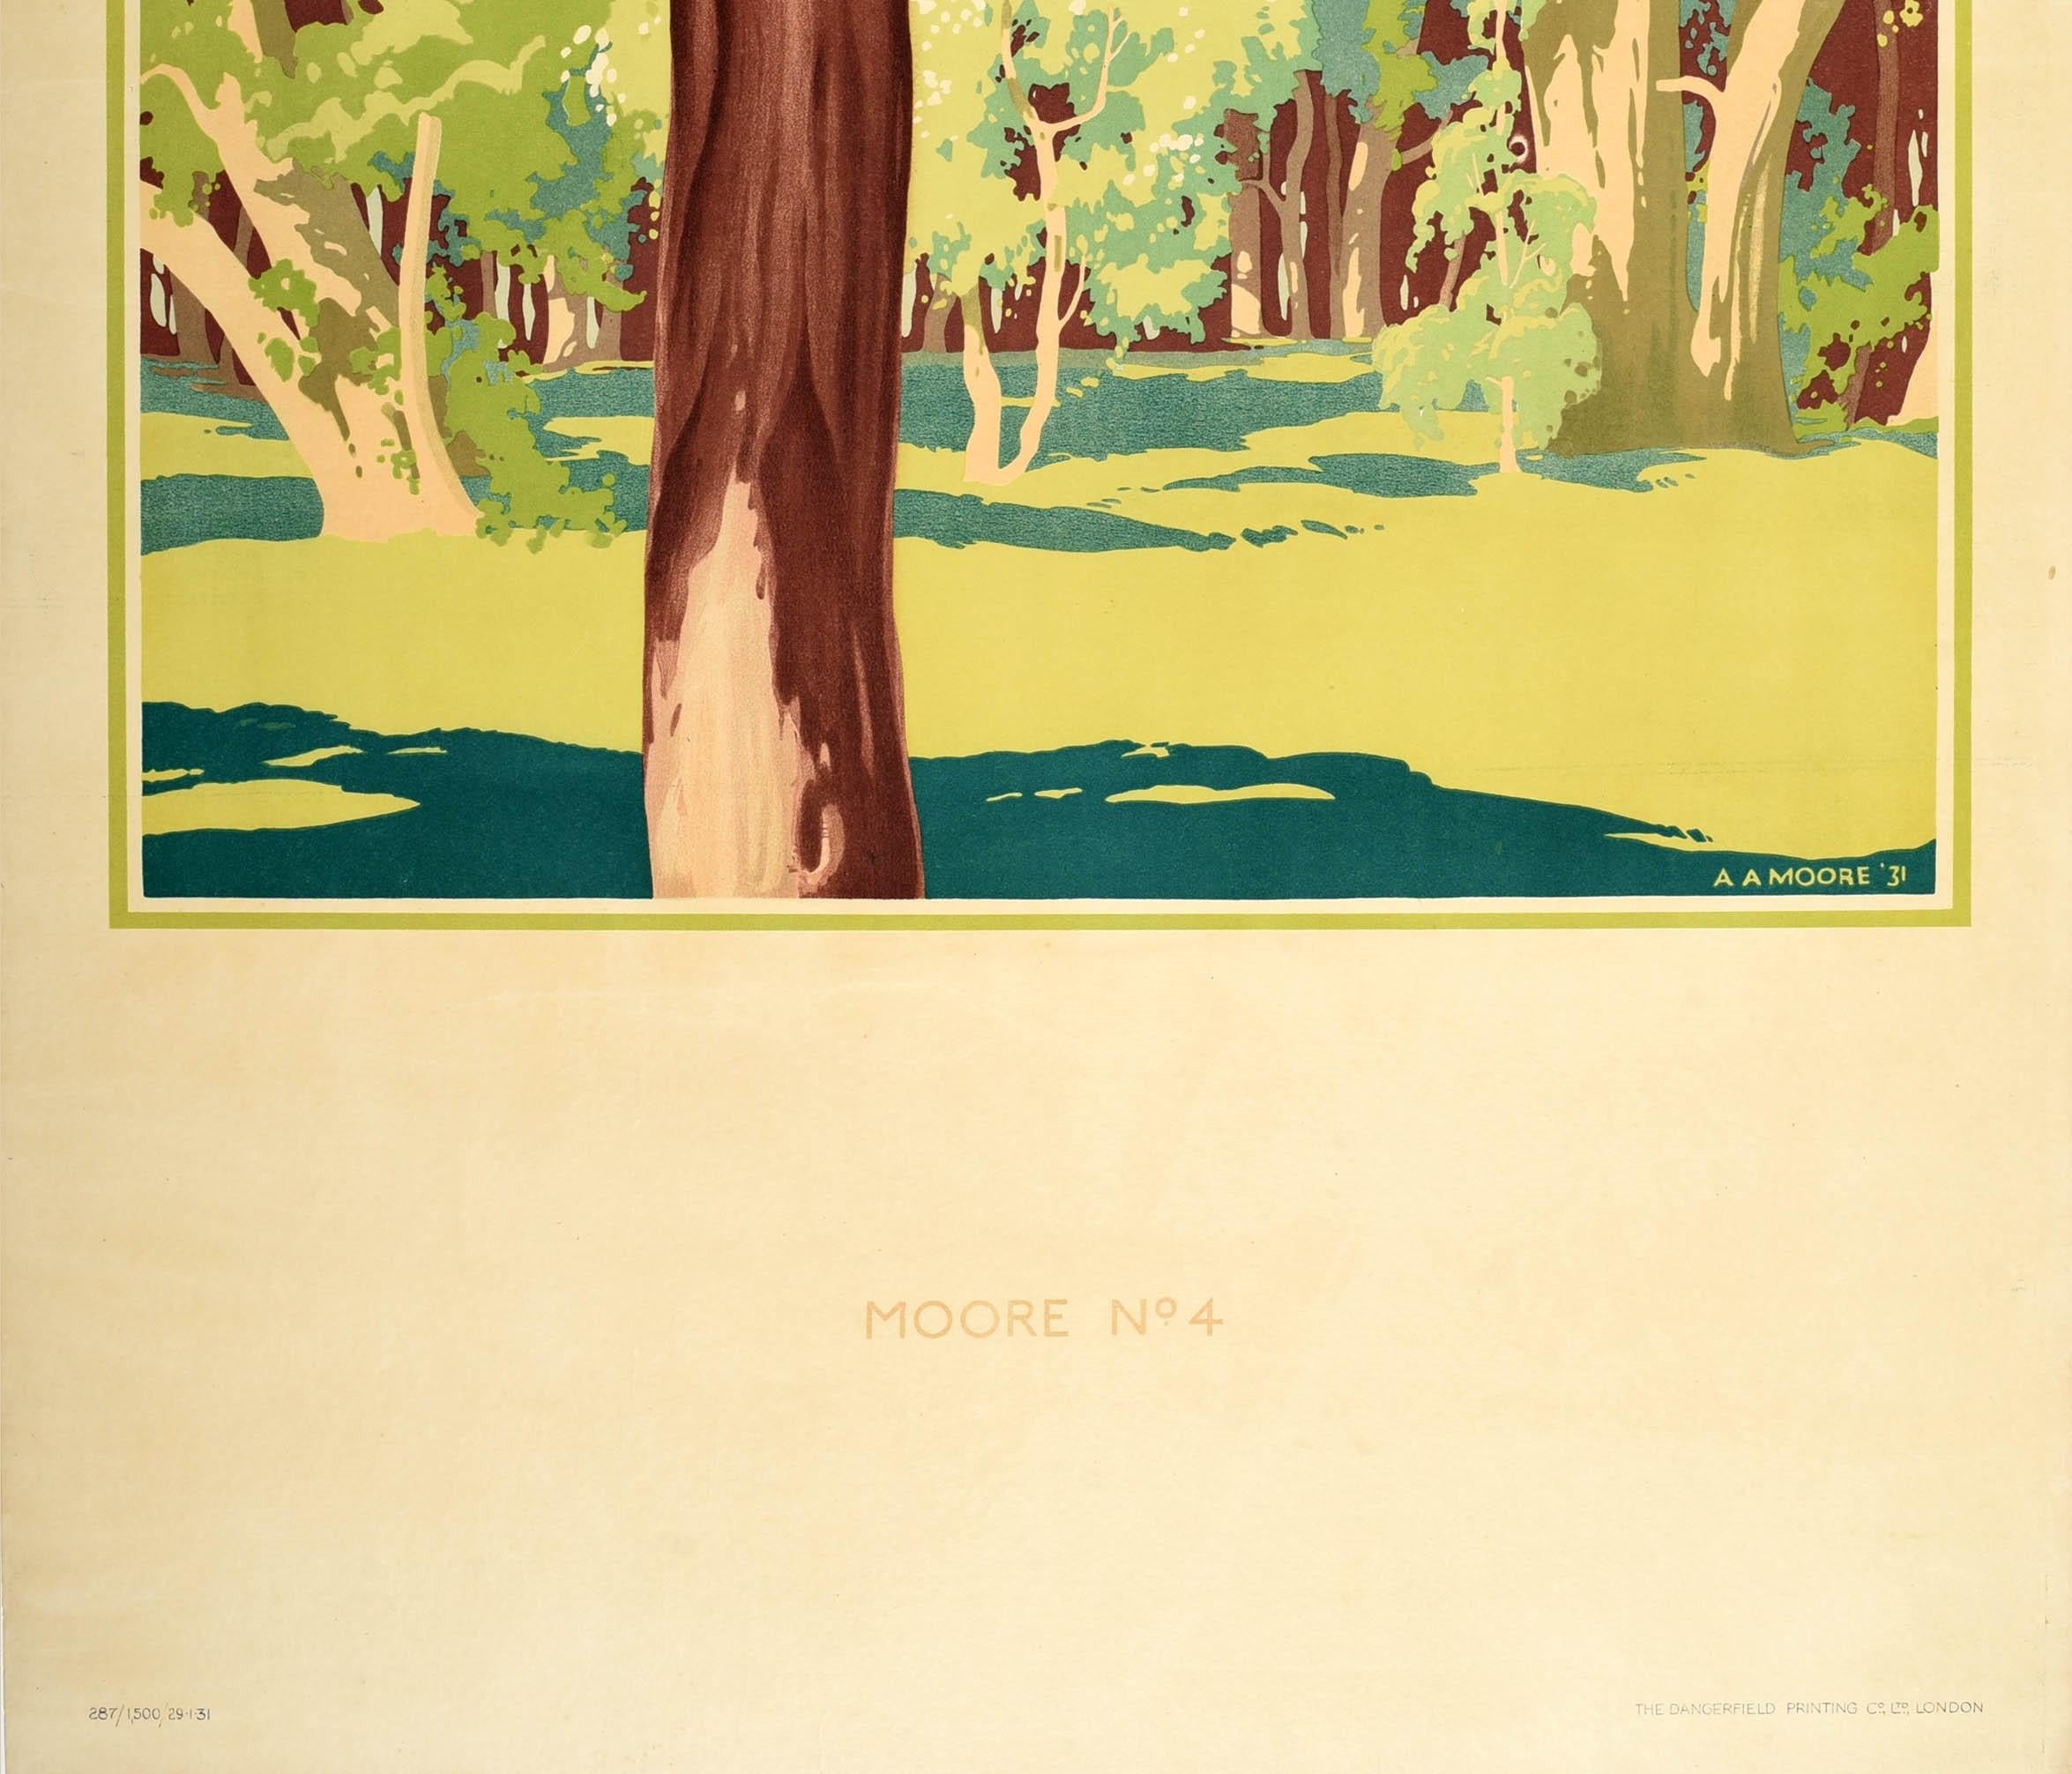 British Original Vintage London Transport Poster Spring Forest Art Countryside Woods For Sale